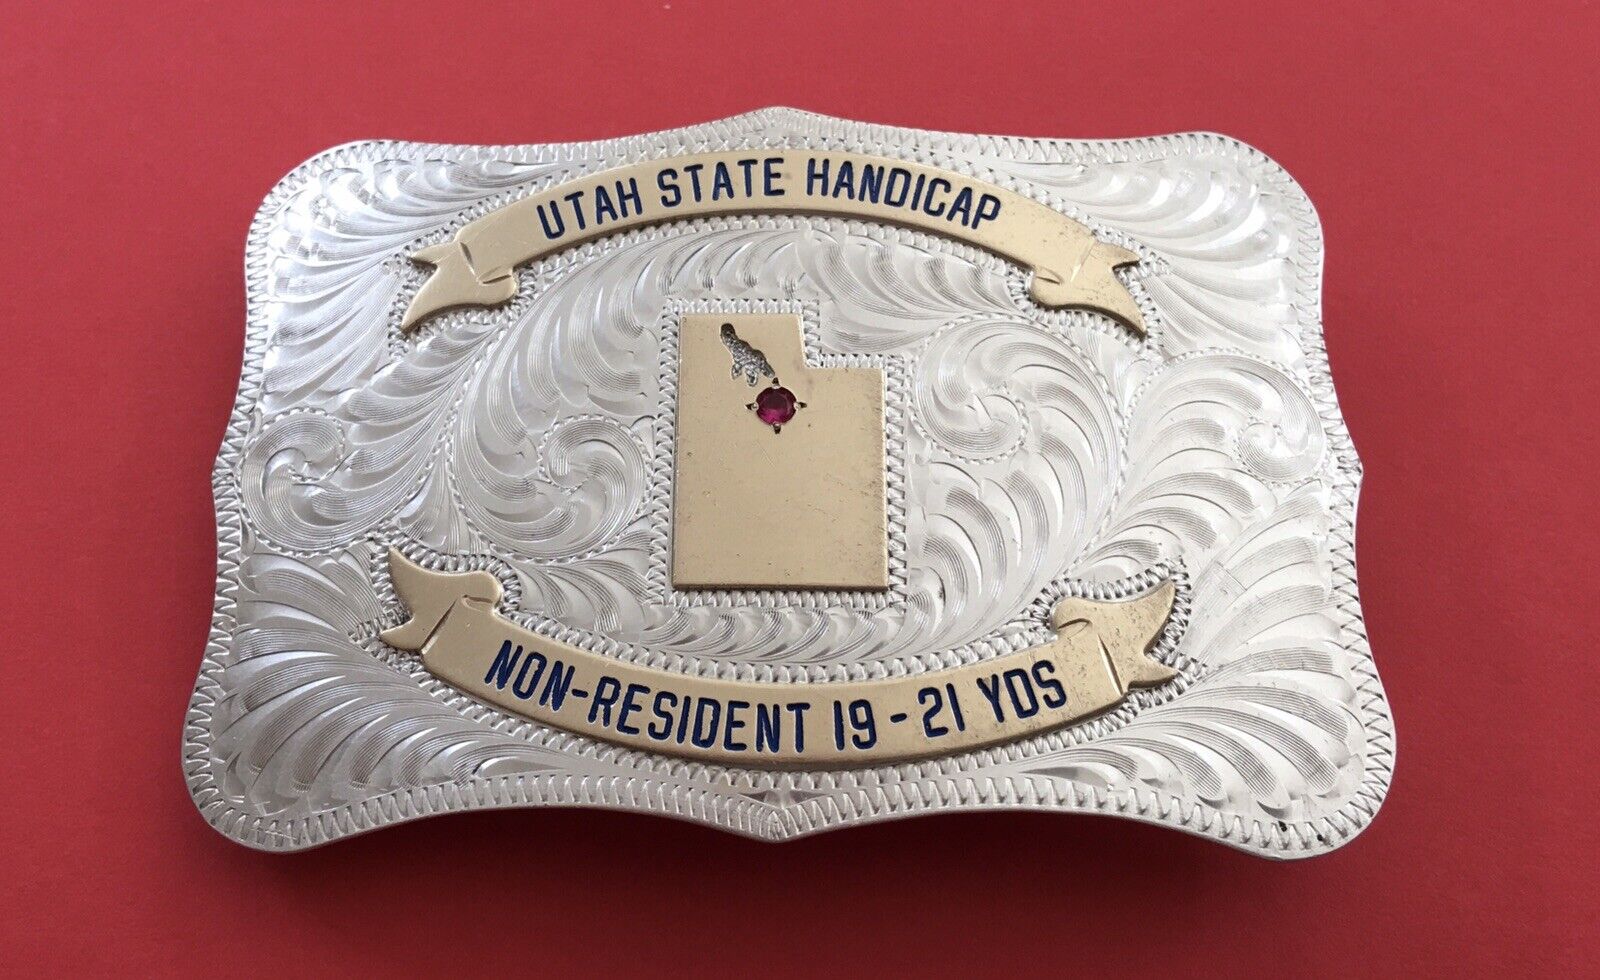 Vintage Utah State Handicap CUST M BILT Sterling Face & Gem Trophy Belt Buckle